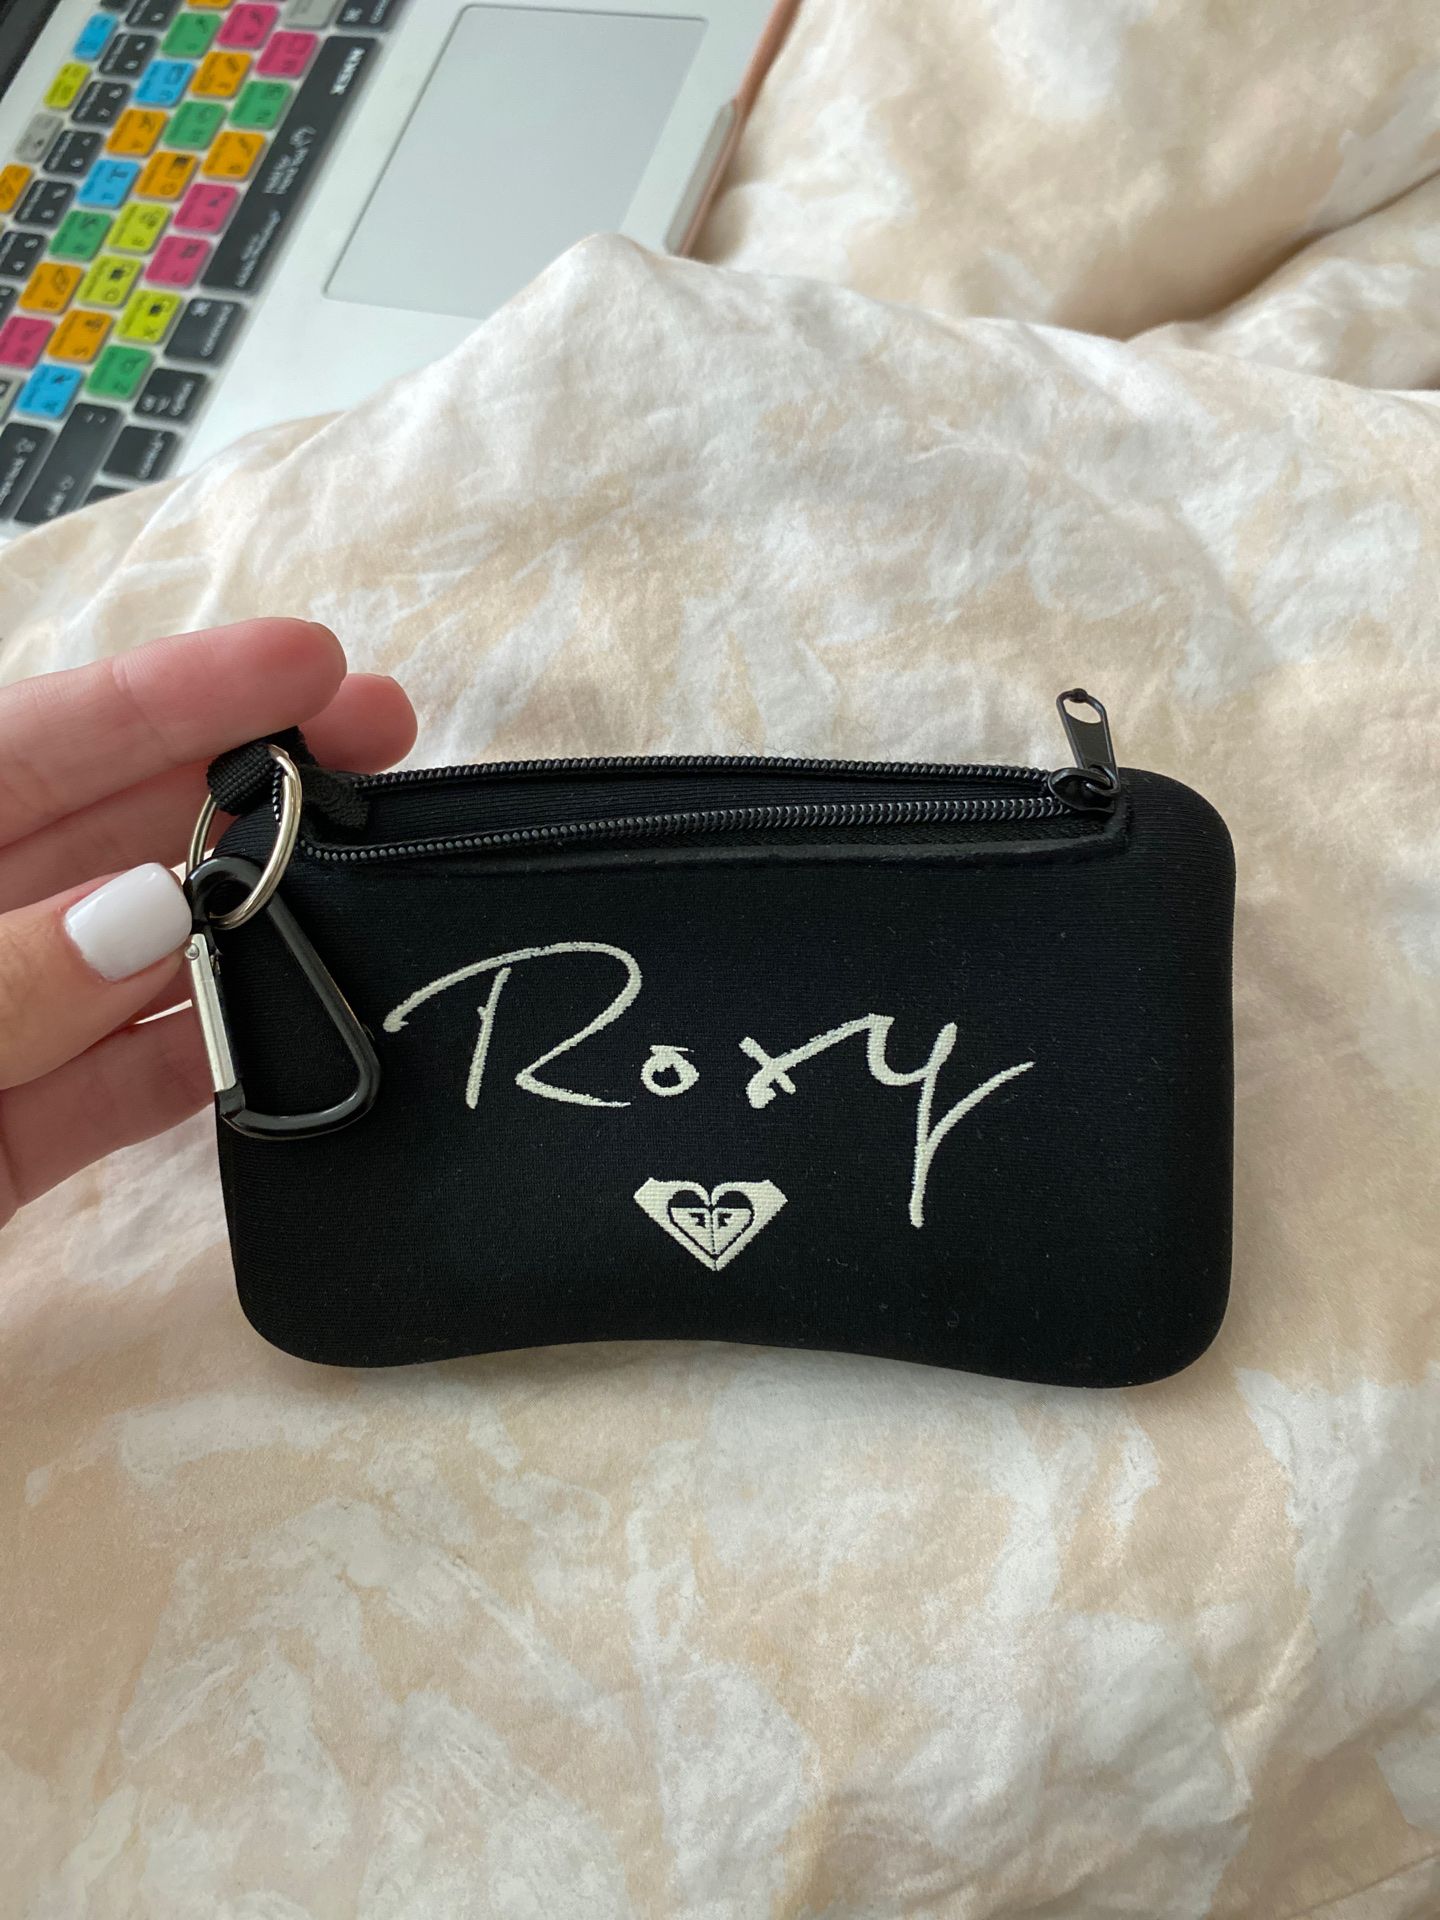 ROXY neoprene wallet/change purse